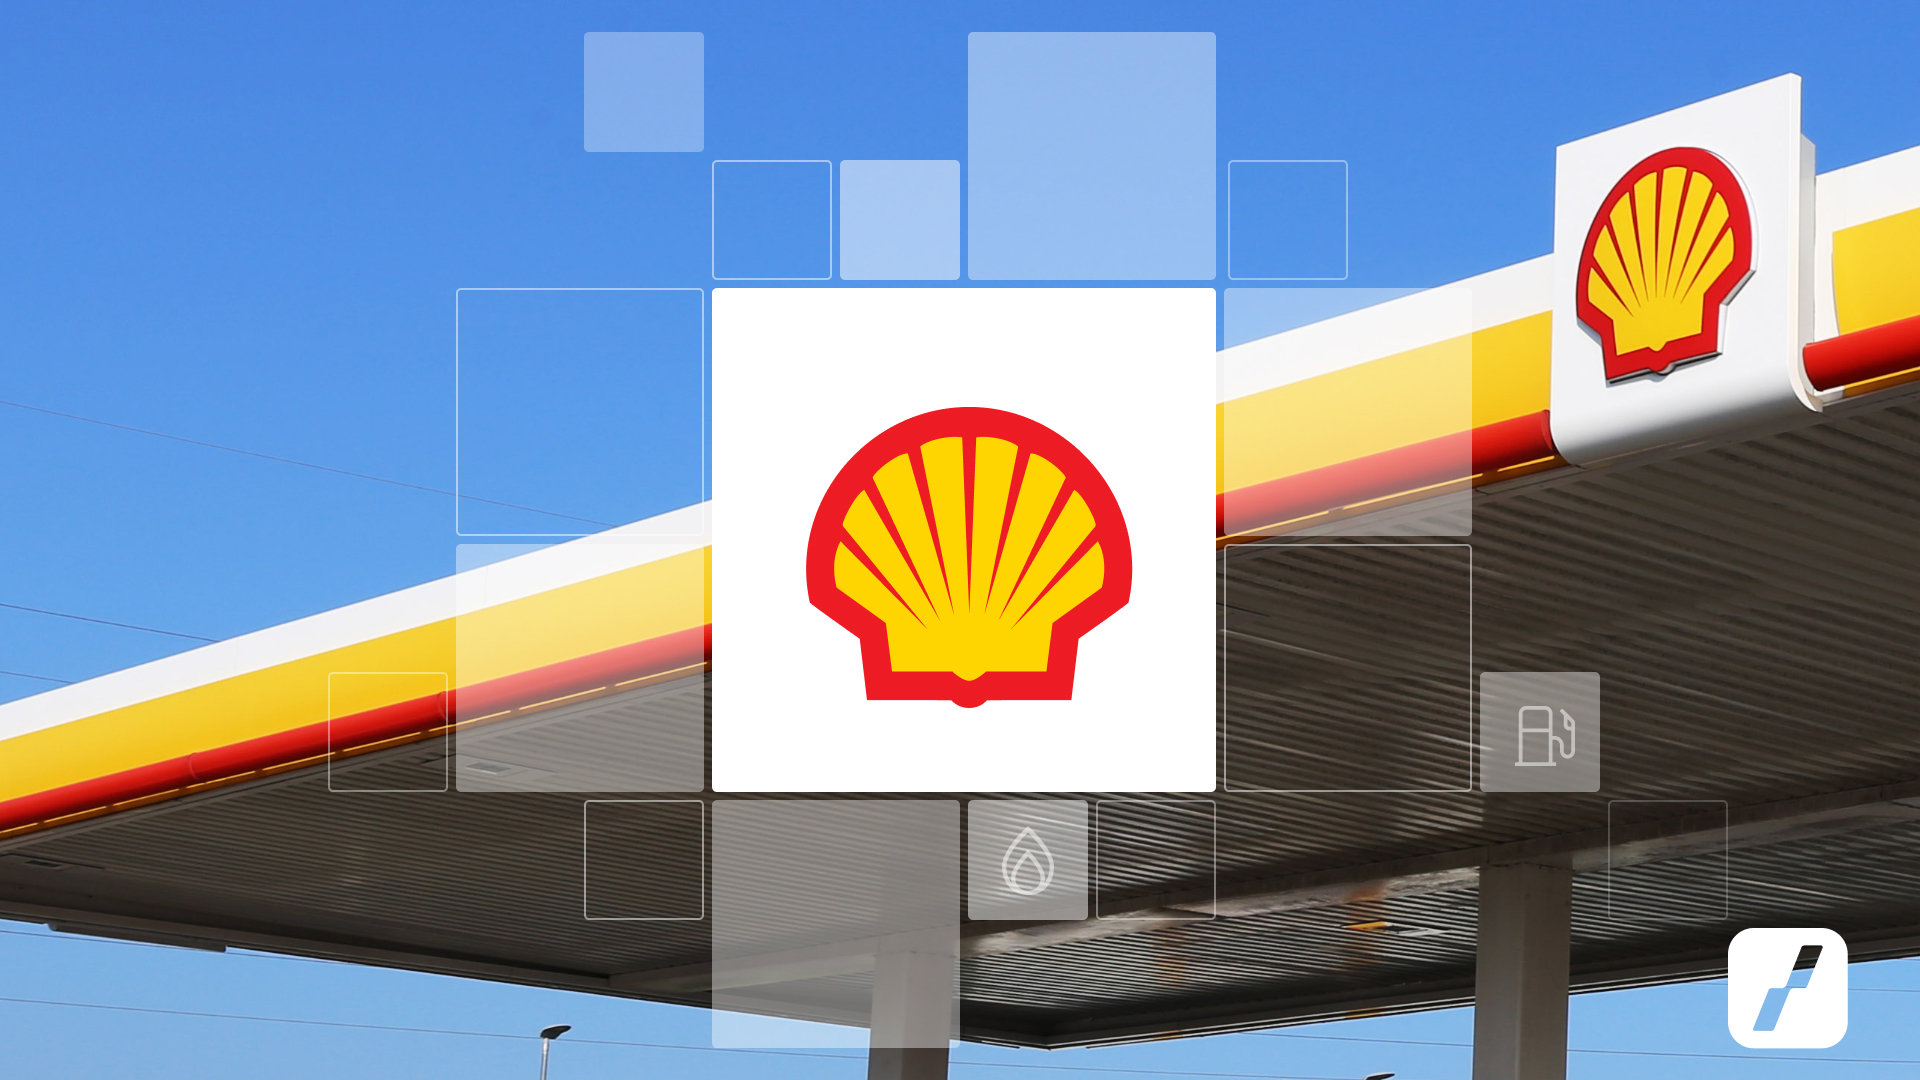 Čerpací stanice a logo společnosti Shell